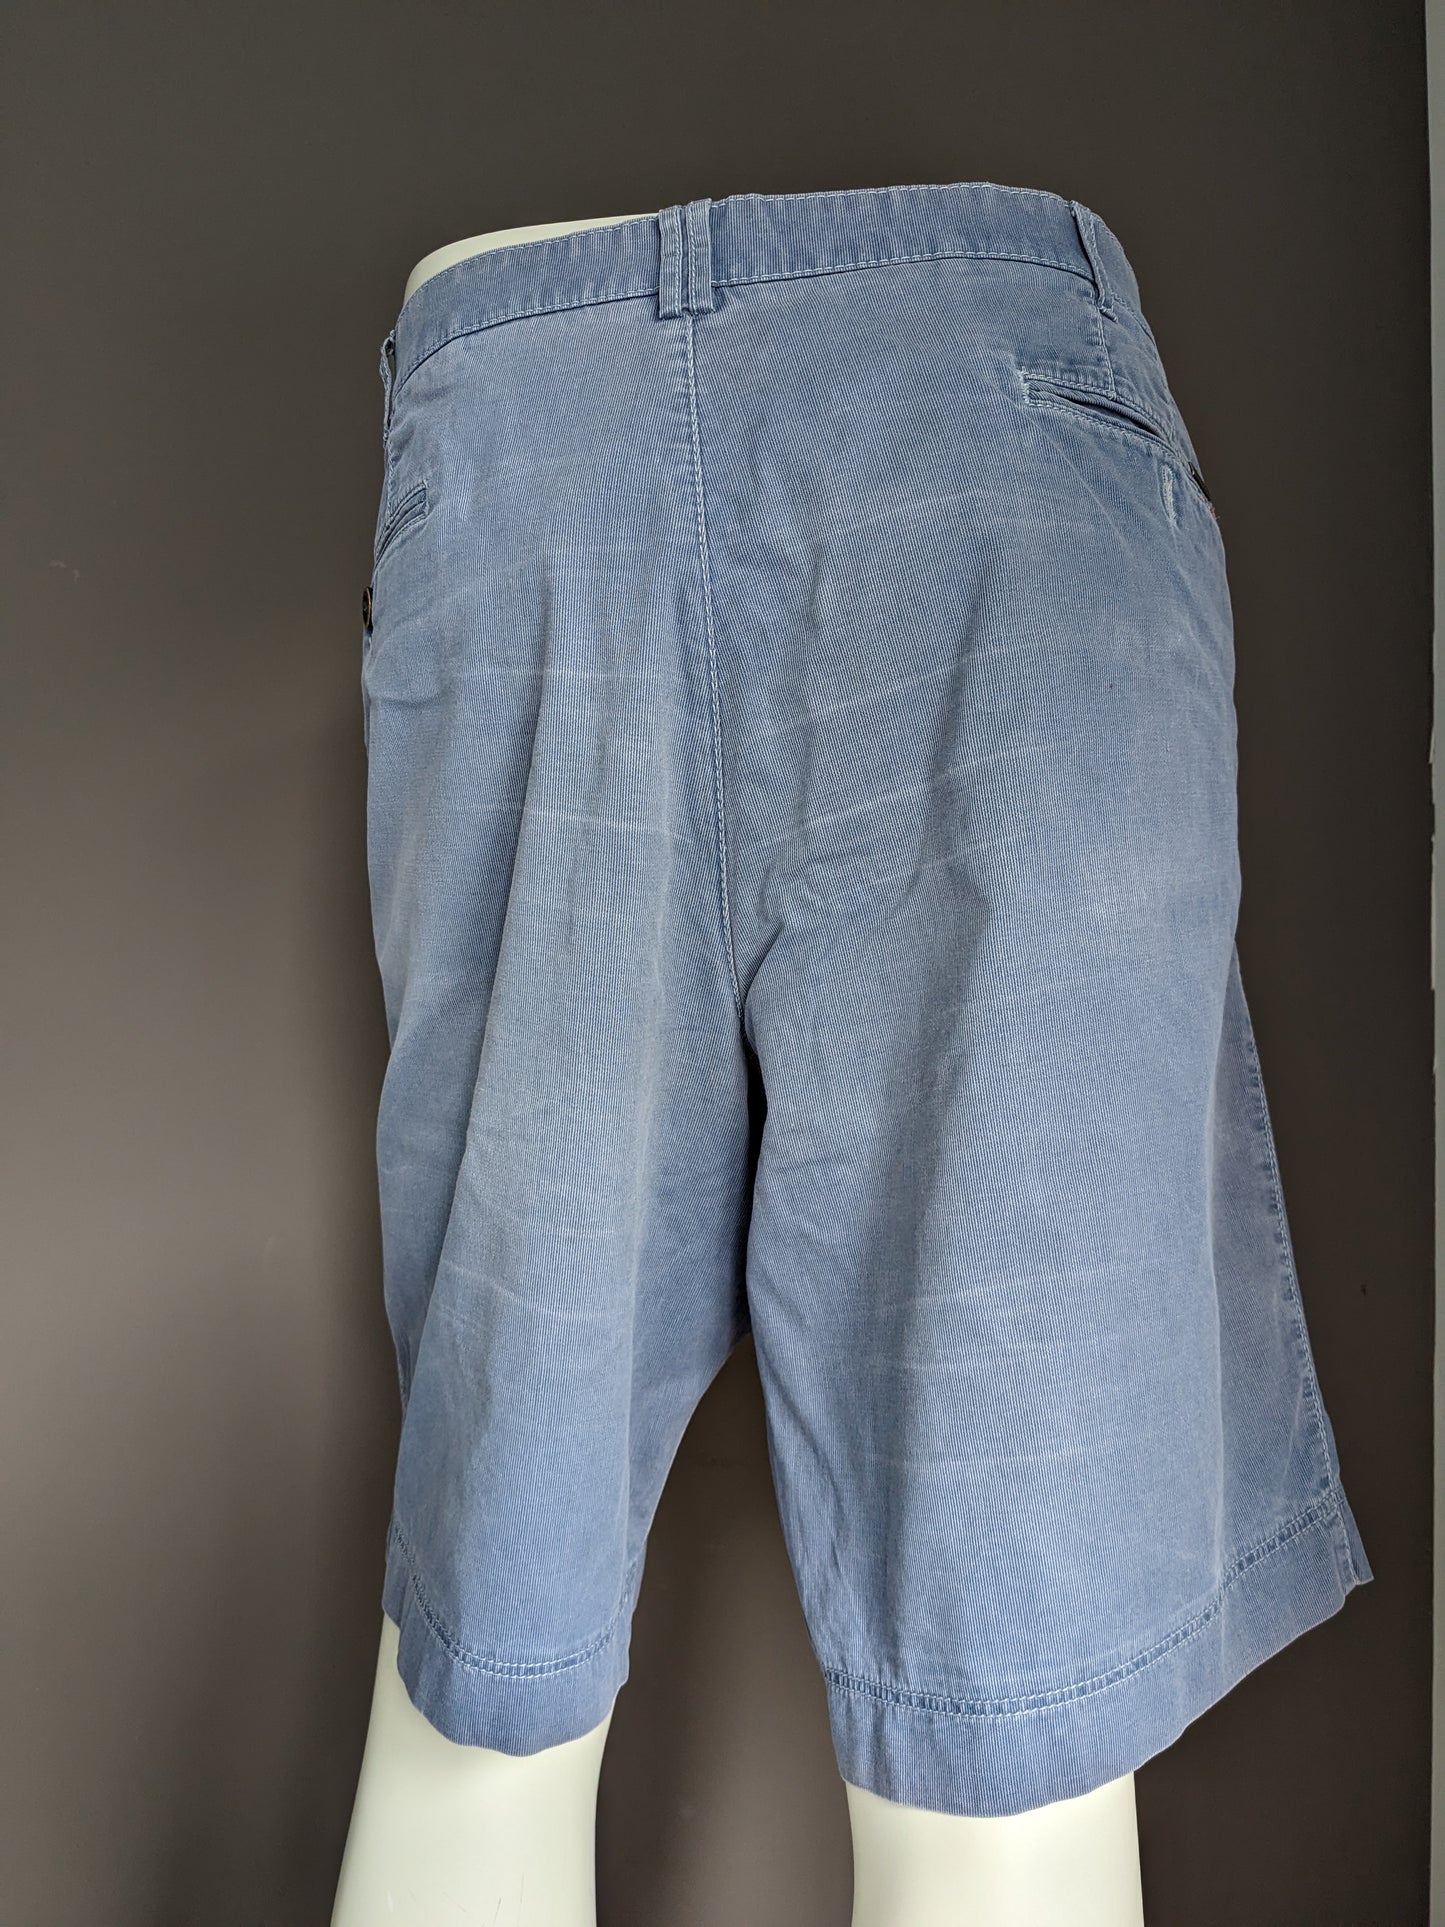 Pantalones cortos de meyer. Motivo de rayas azules. Tamaño 29 (58 / xl)